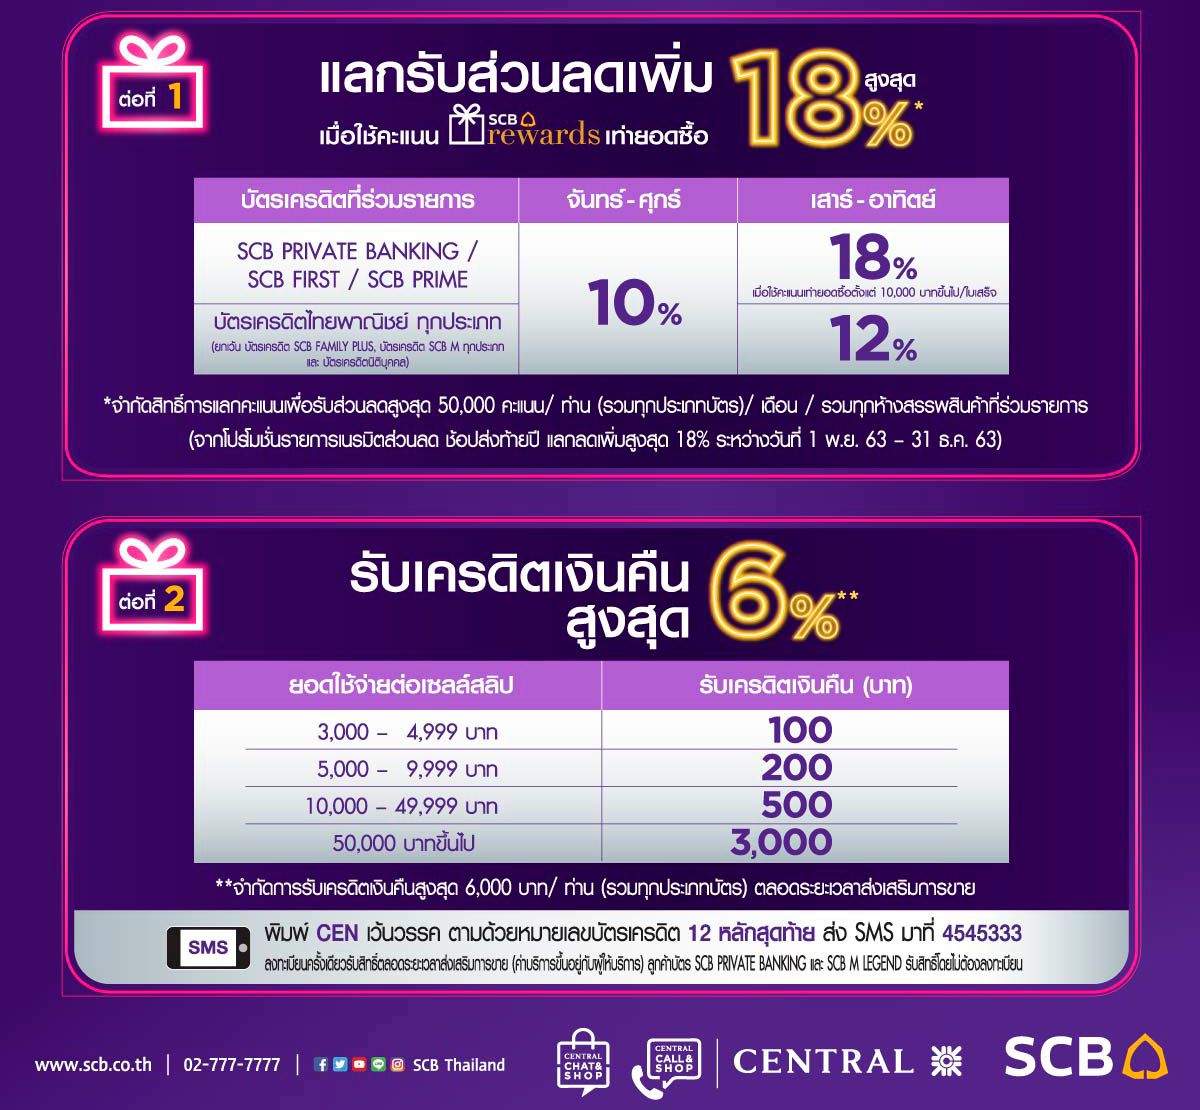 โปรโมชั่นบัตรเครดิตธนาคารไทยพาณิชย์ (Siam Commercial Bank) X เซ็นทรัล  (Central) - Sale Here